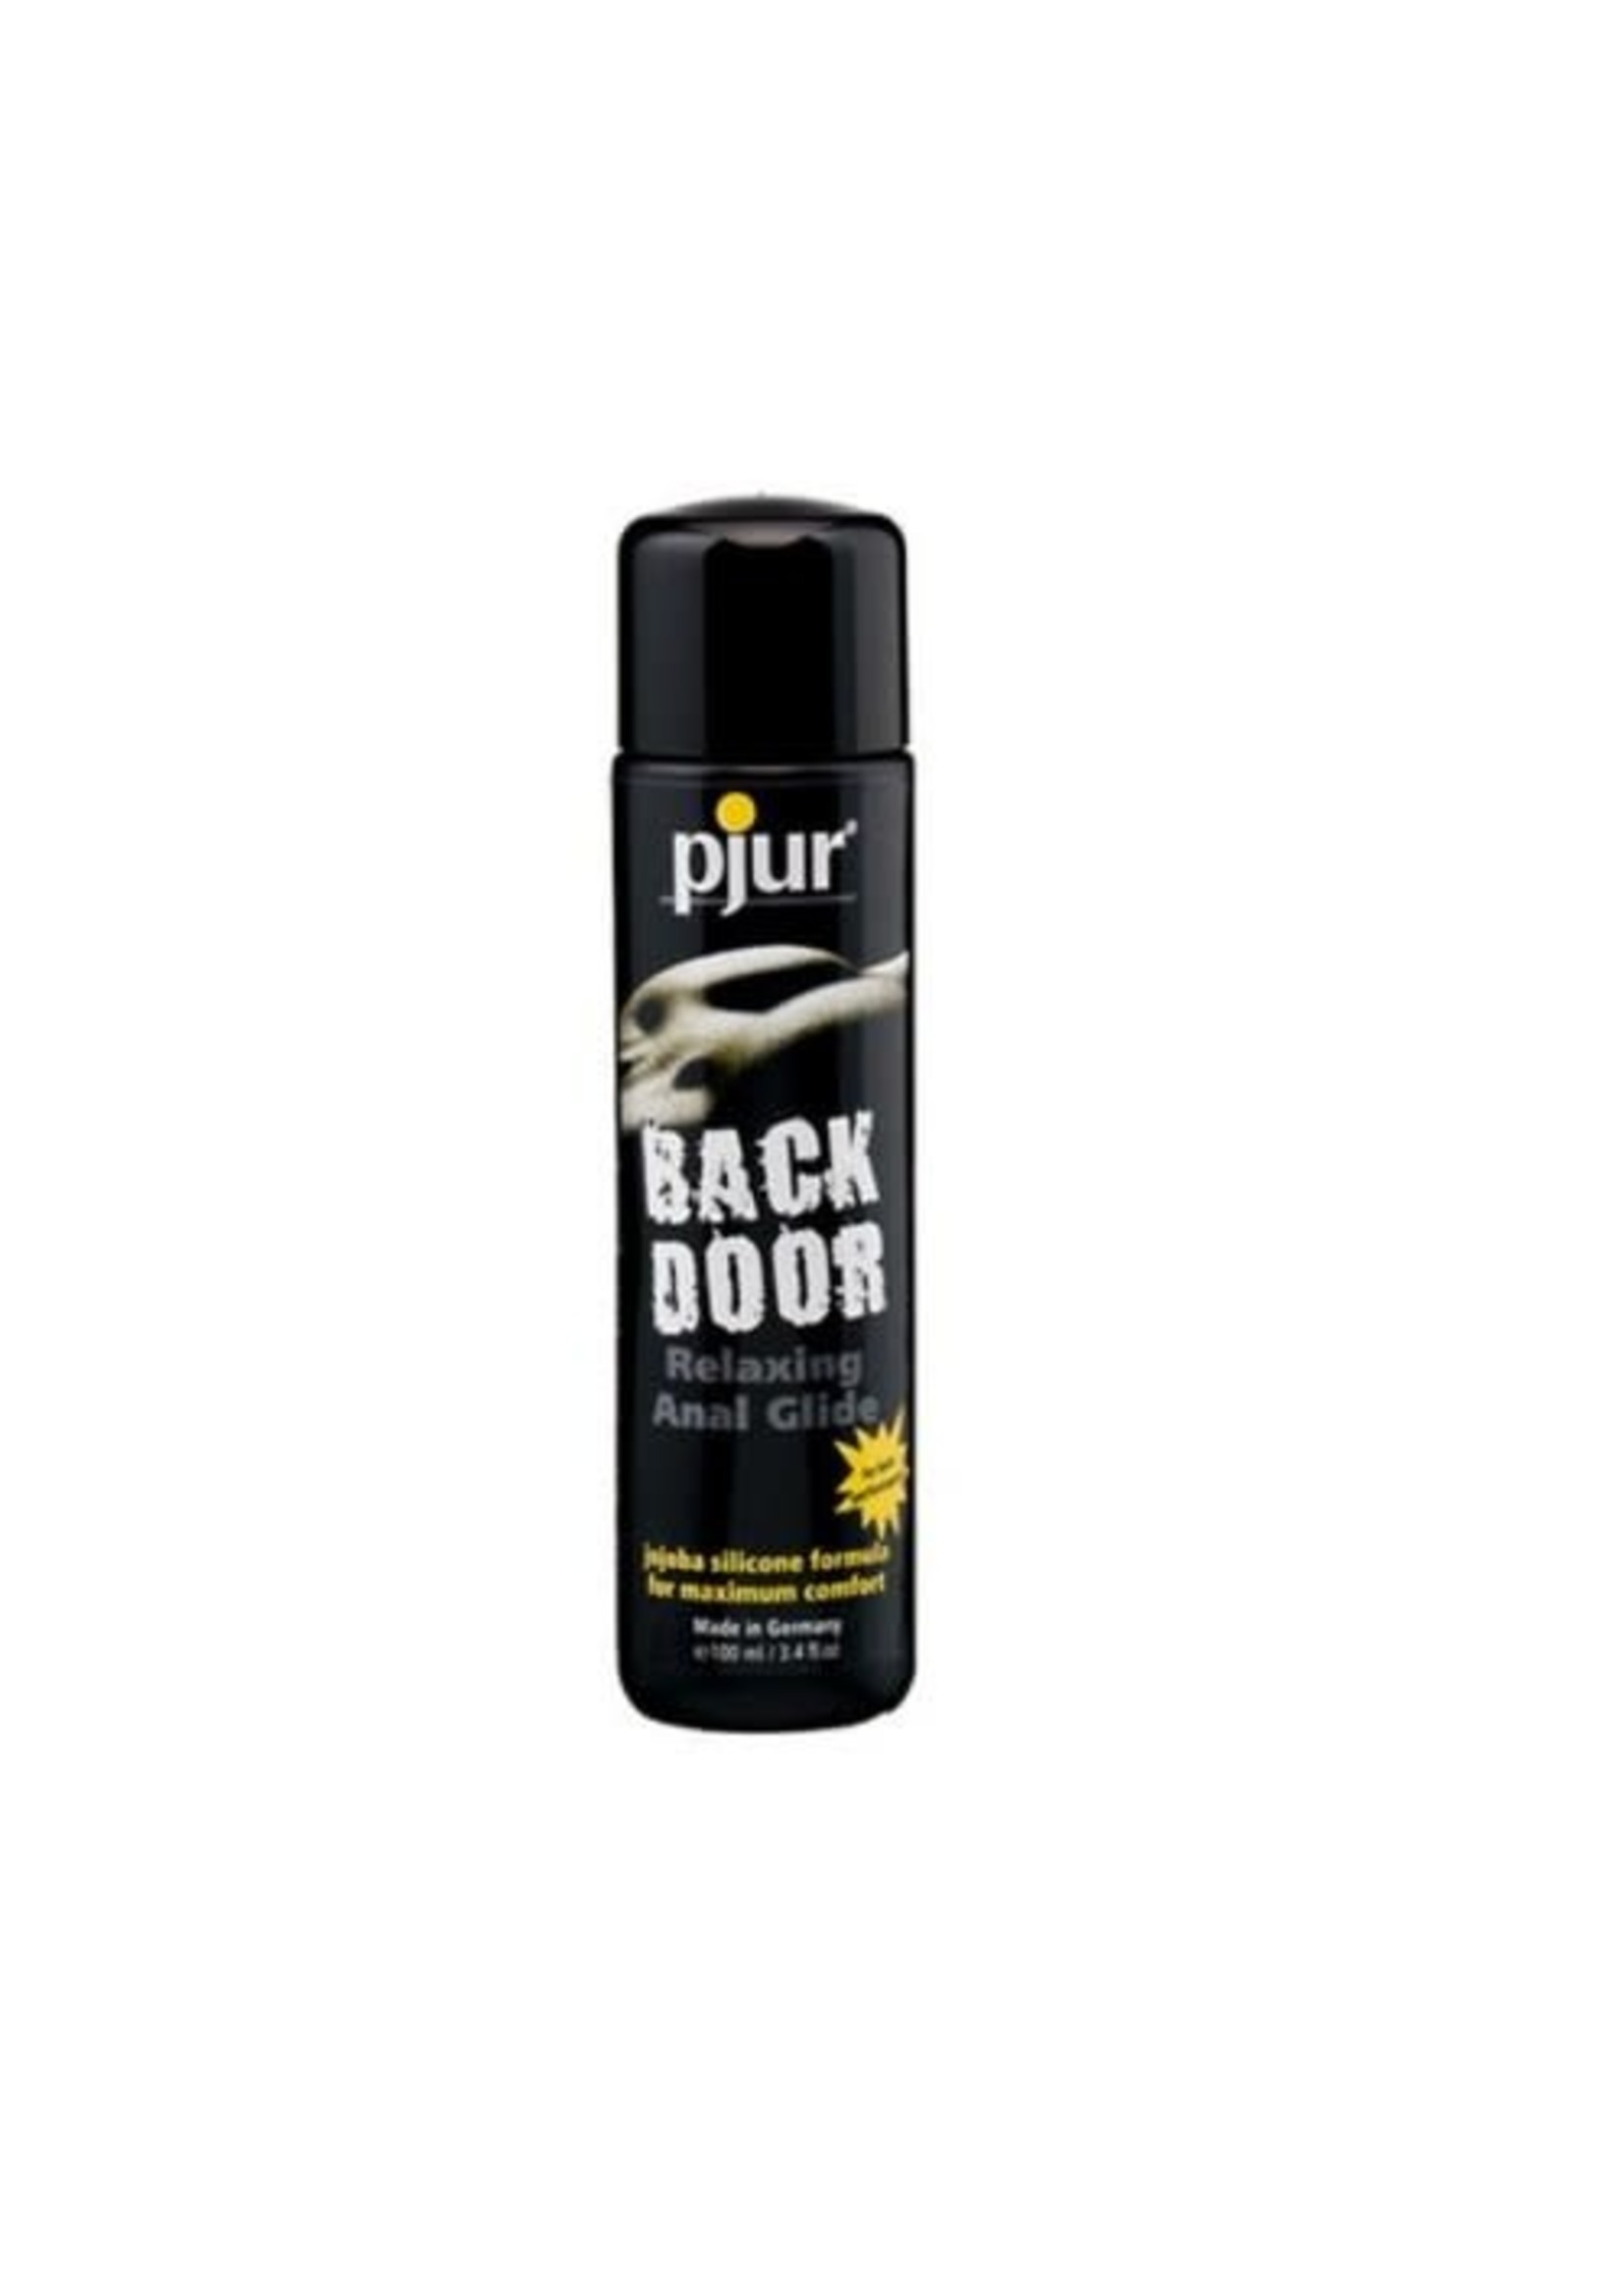 Pjur Back Door Relaxing Anal Glide 3.4 oz